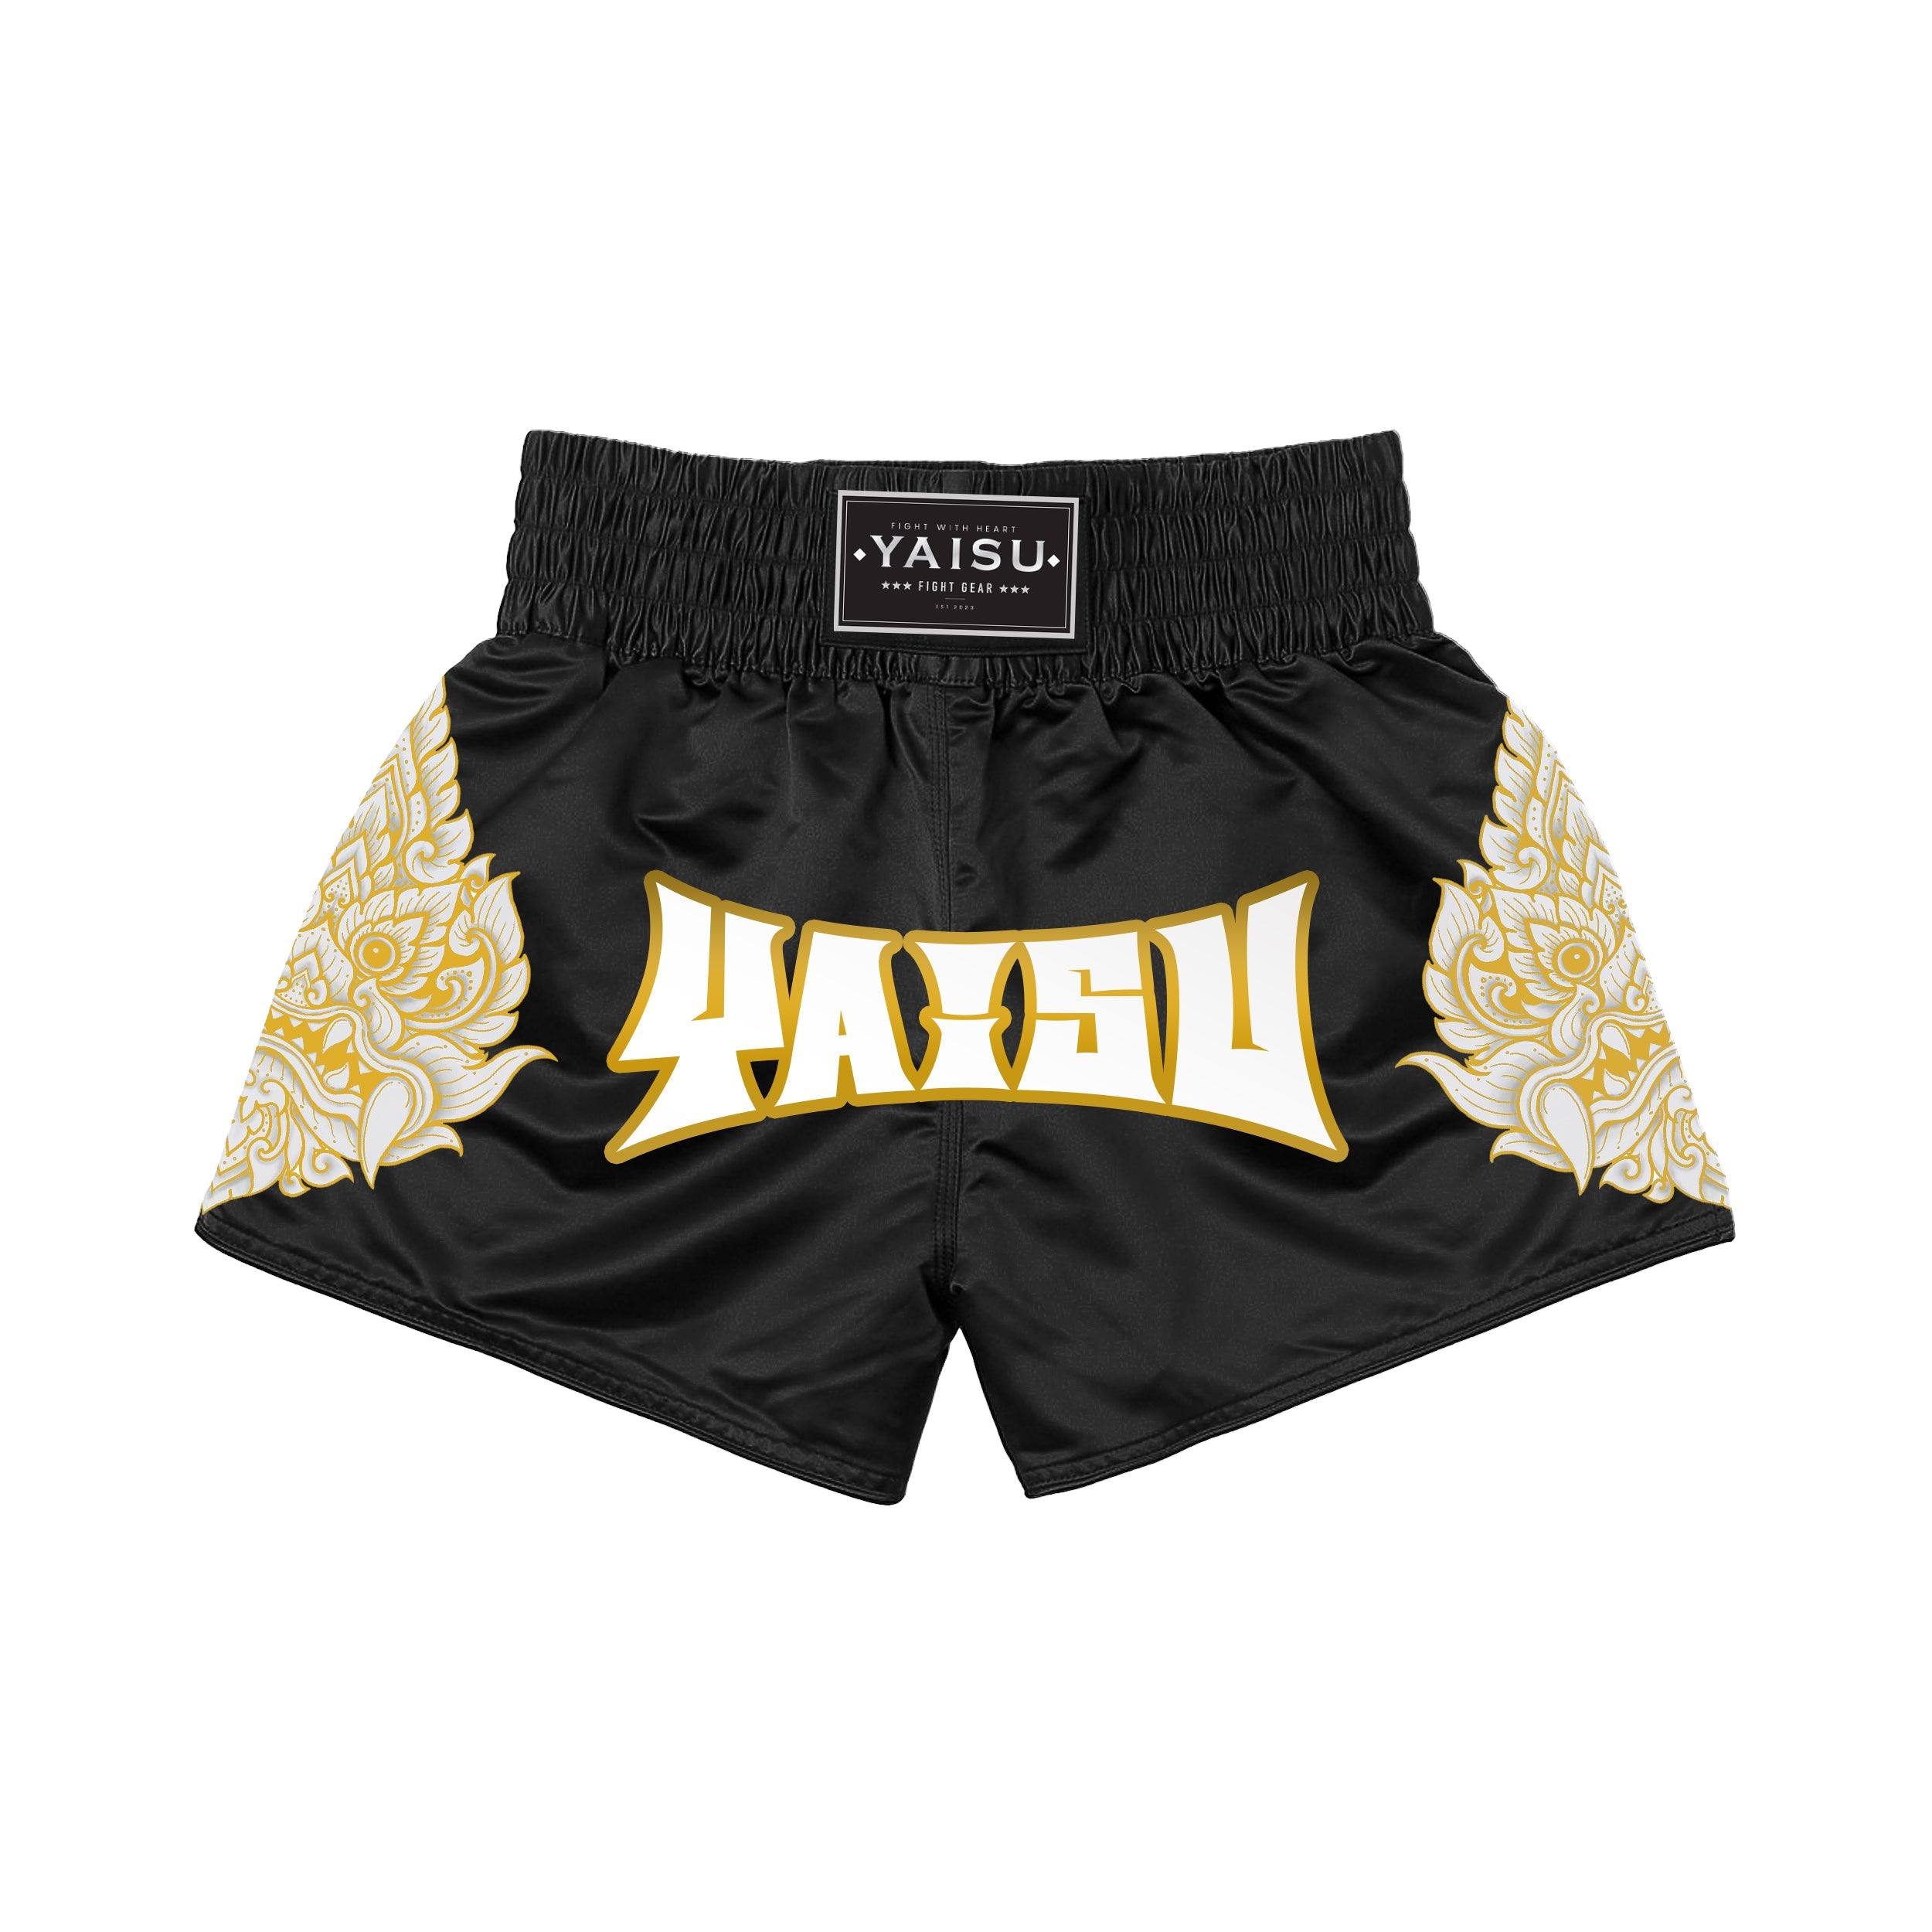 Yaisu Muay Thai Shorts - Wai